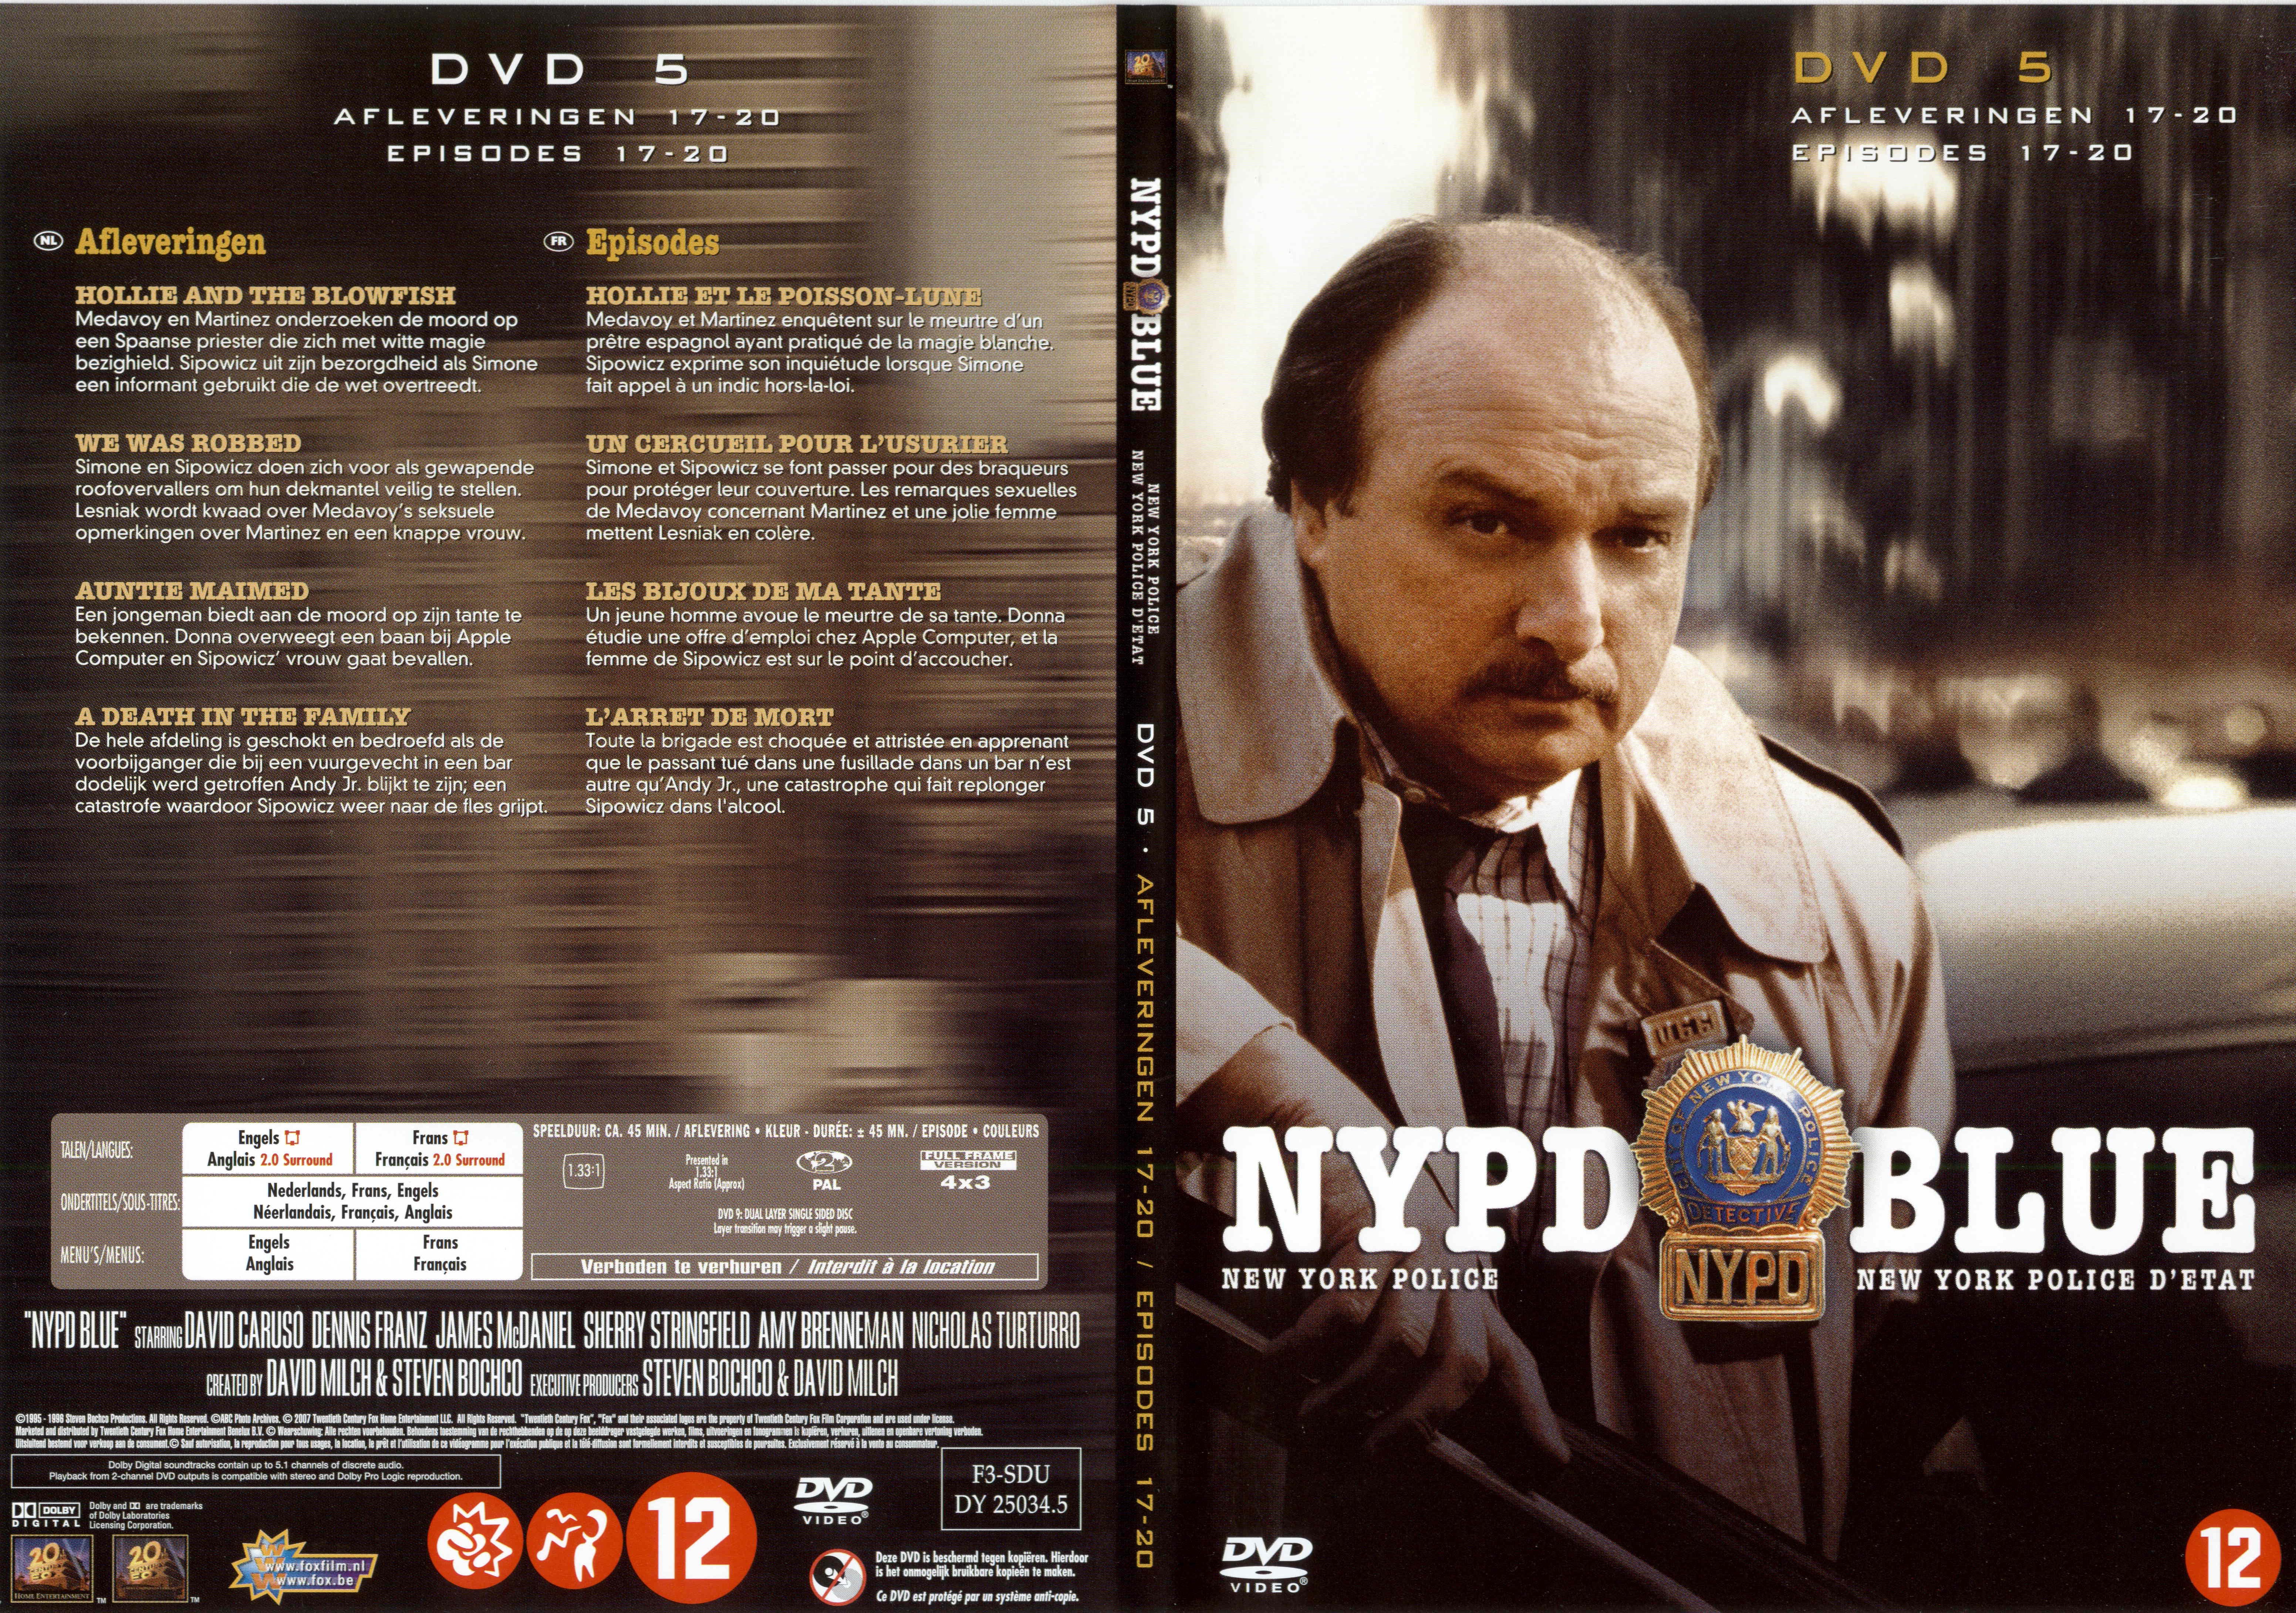 Jaquette DVD NYPD Blue saison 03 dvd 05